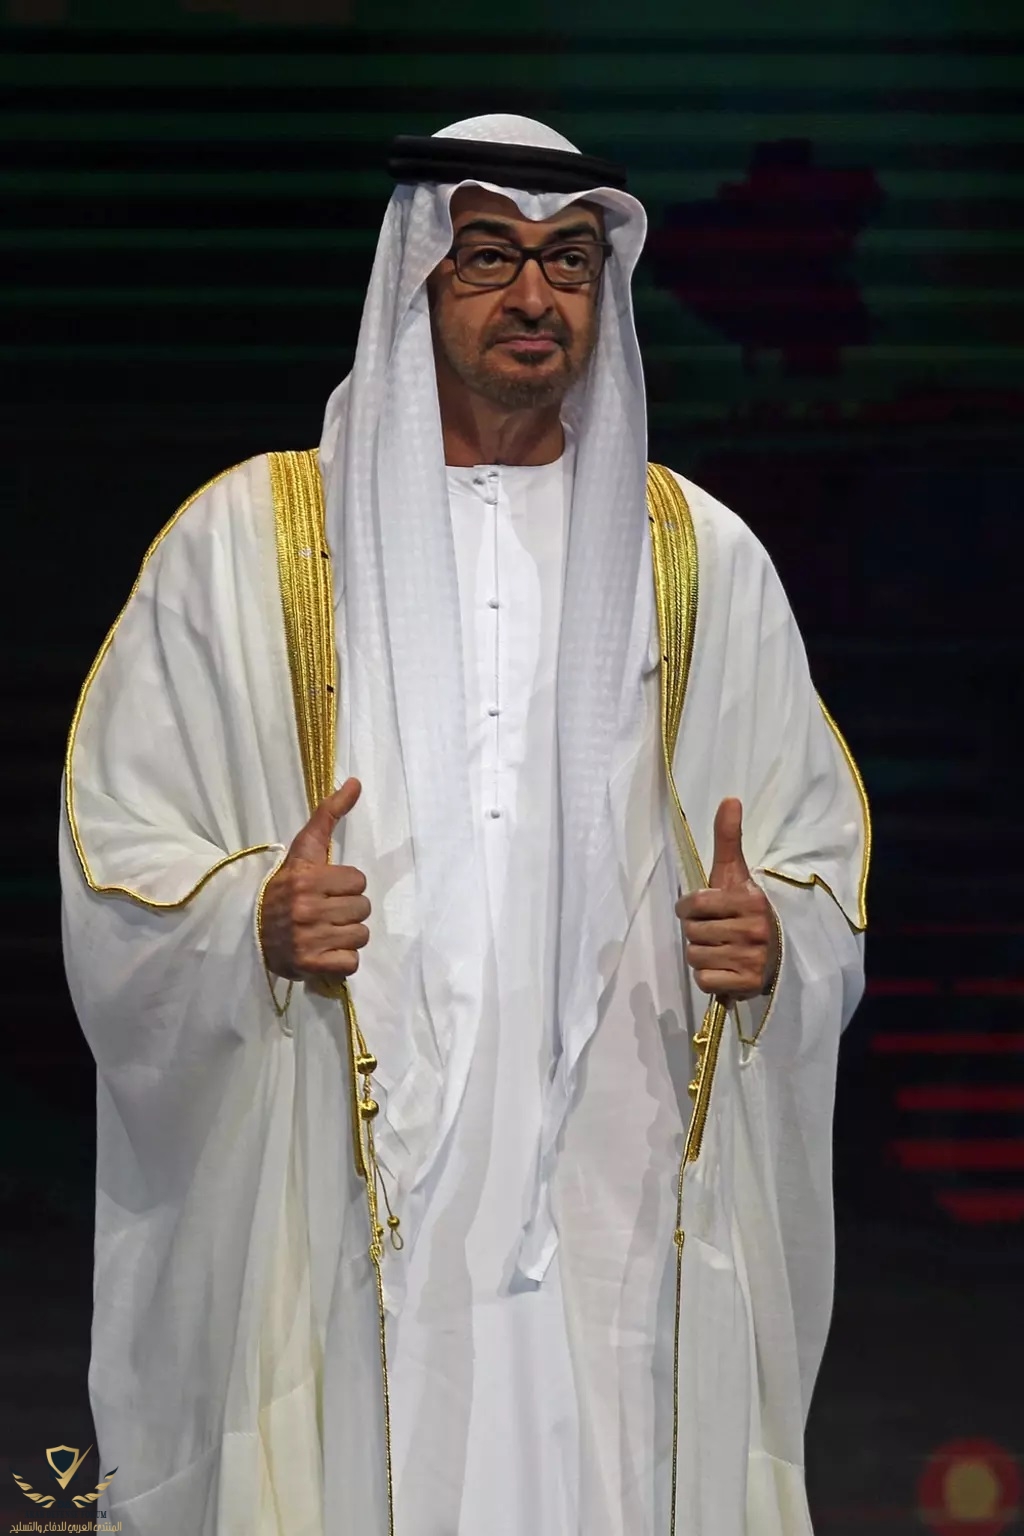 UAE-faces-Mohammed-bin-Zayed-al-Nahyan-fanack-AFP1024PX (1).jpg